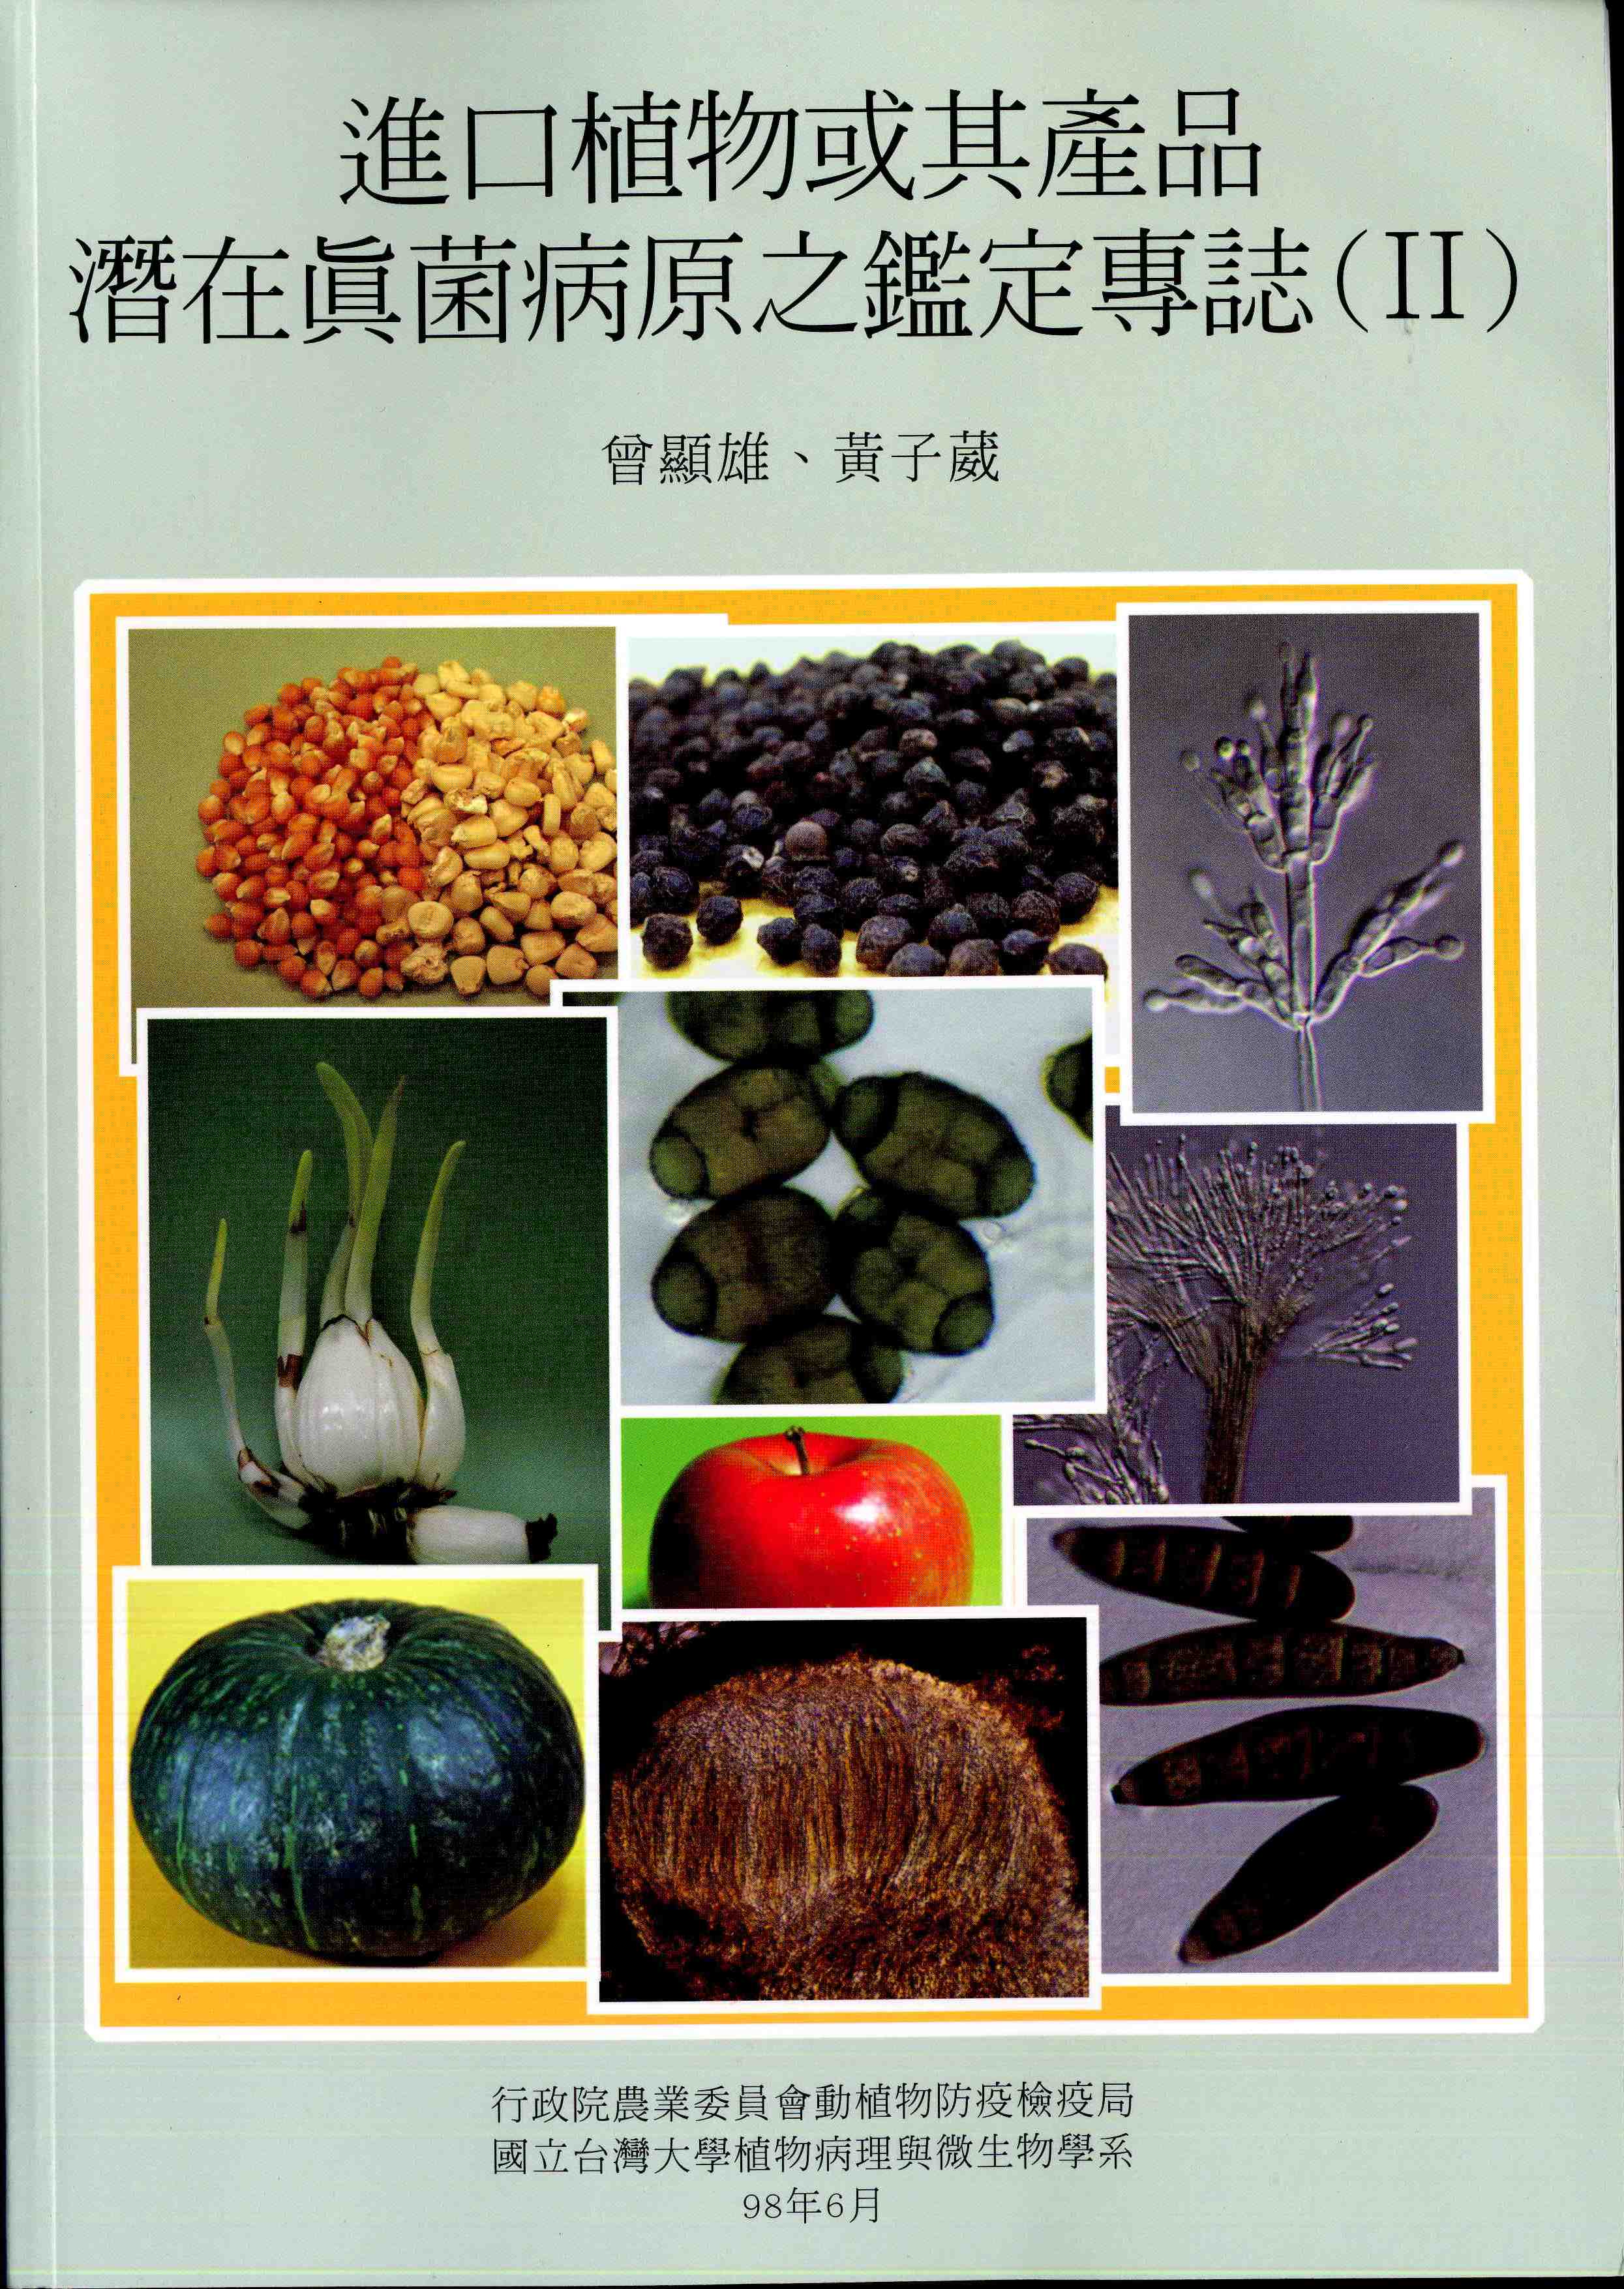 進口植物或其產品潛在真菌病原之鑑定專誌(ii)